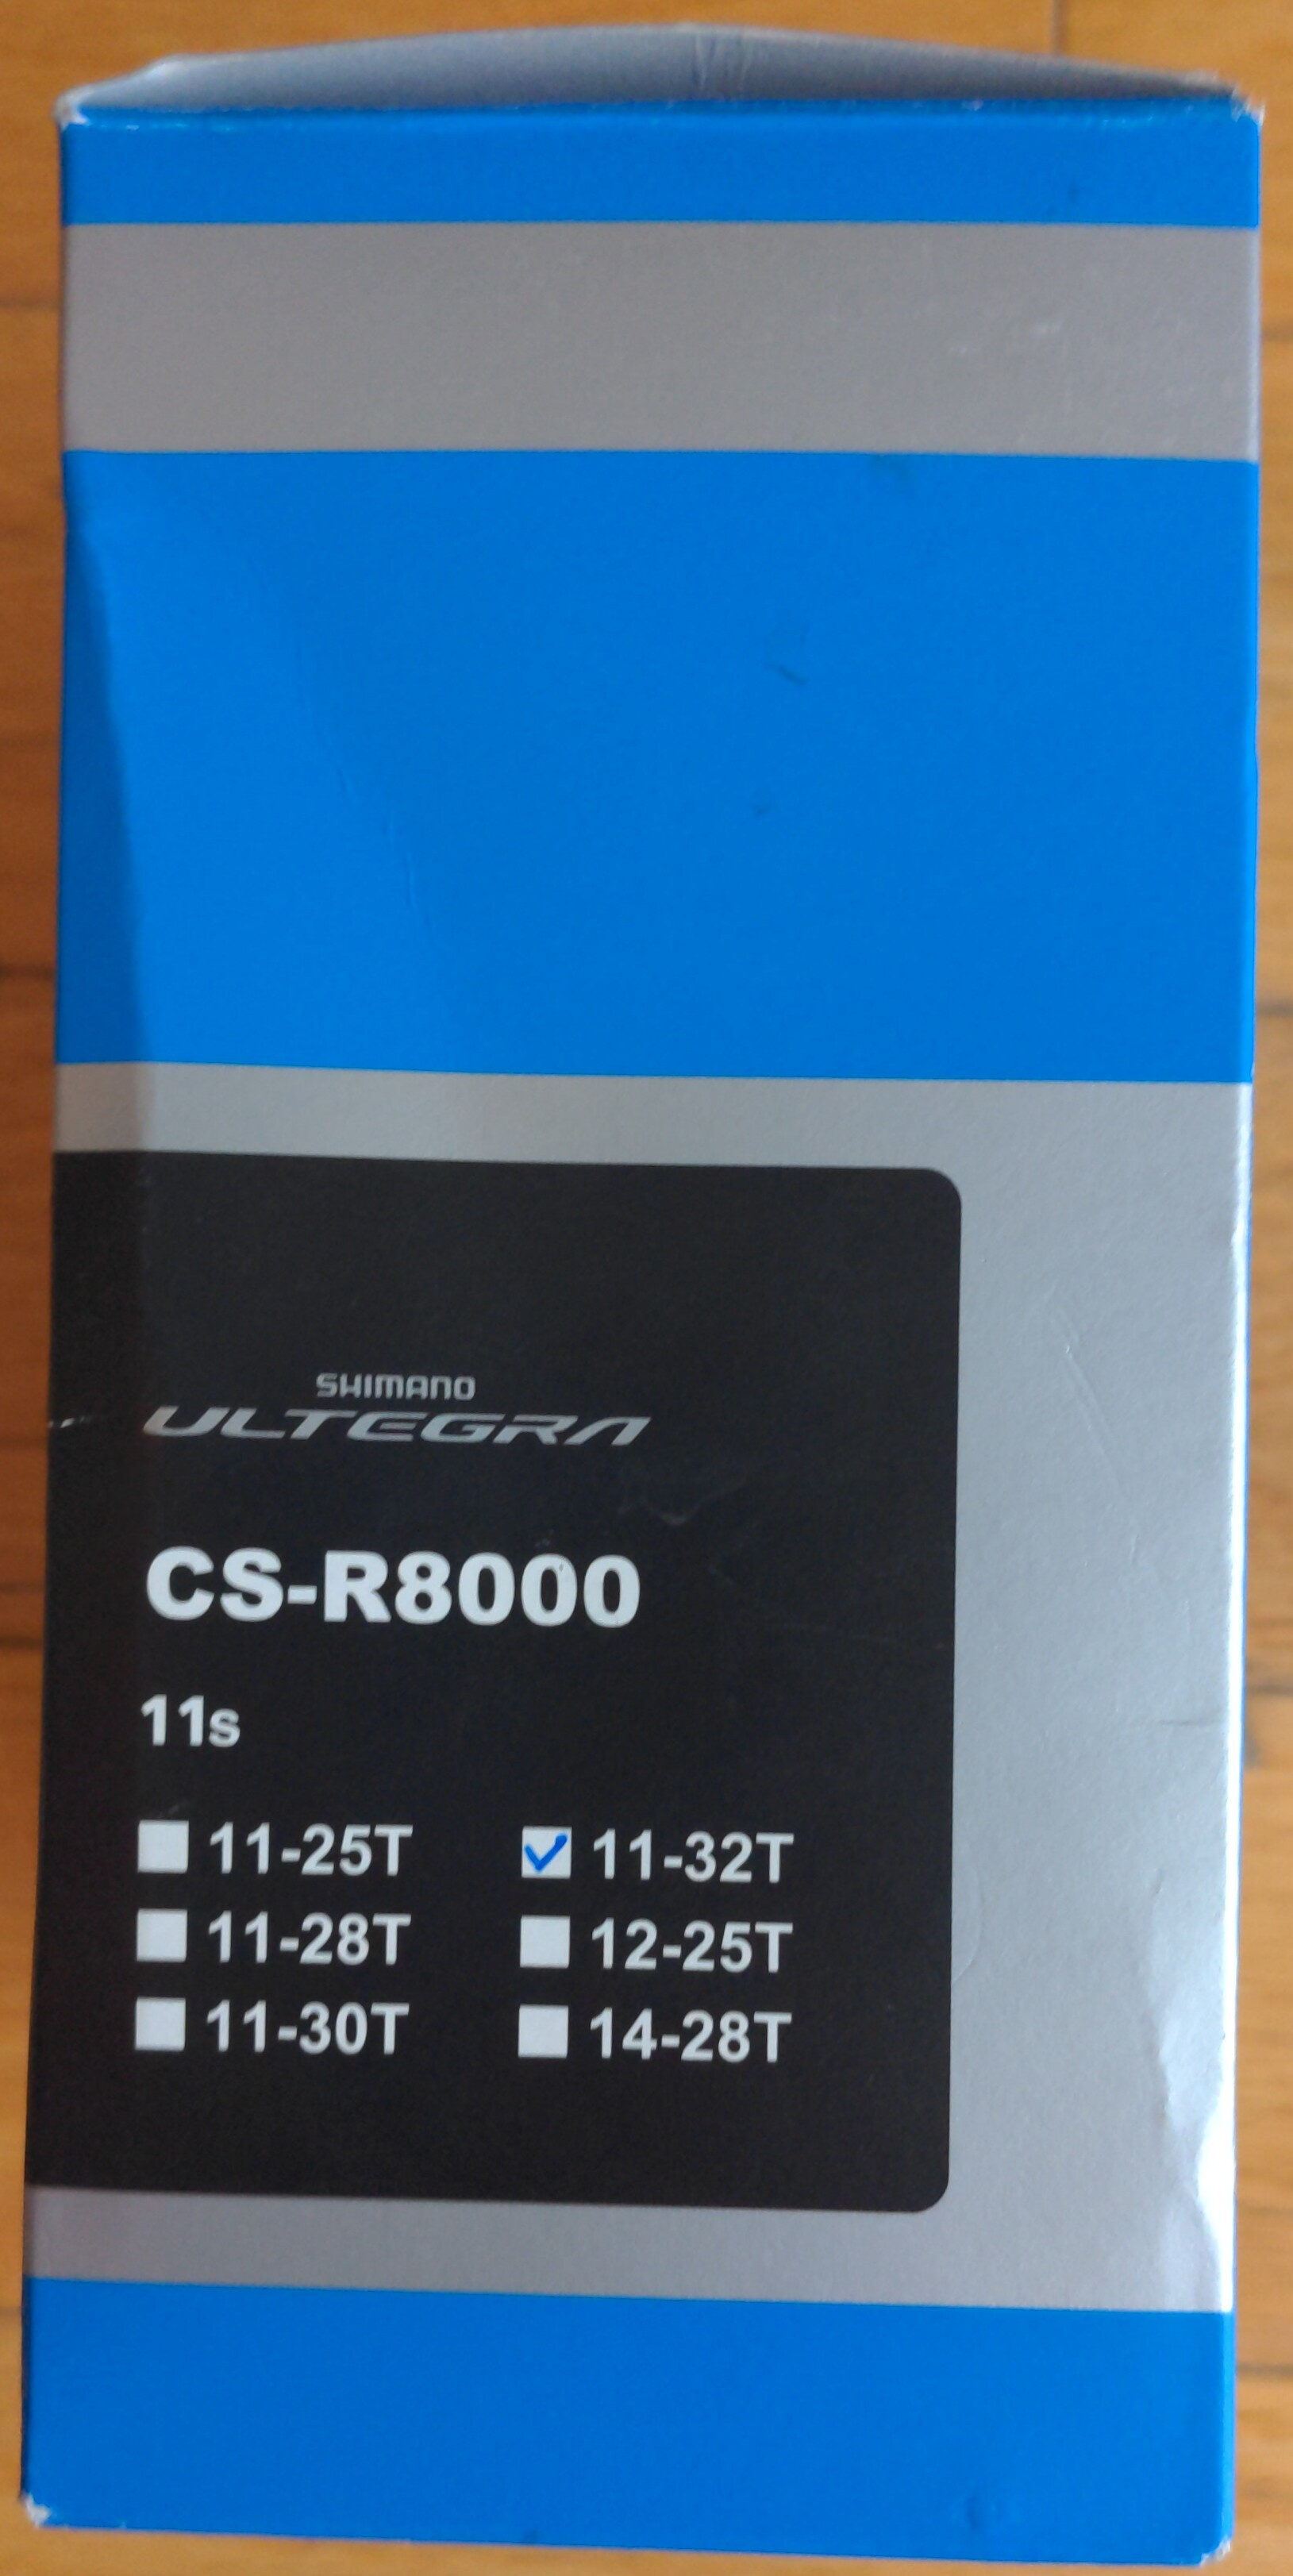 CS-R8000 - Product - en